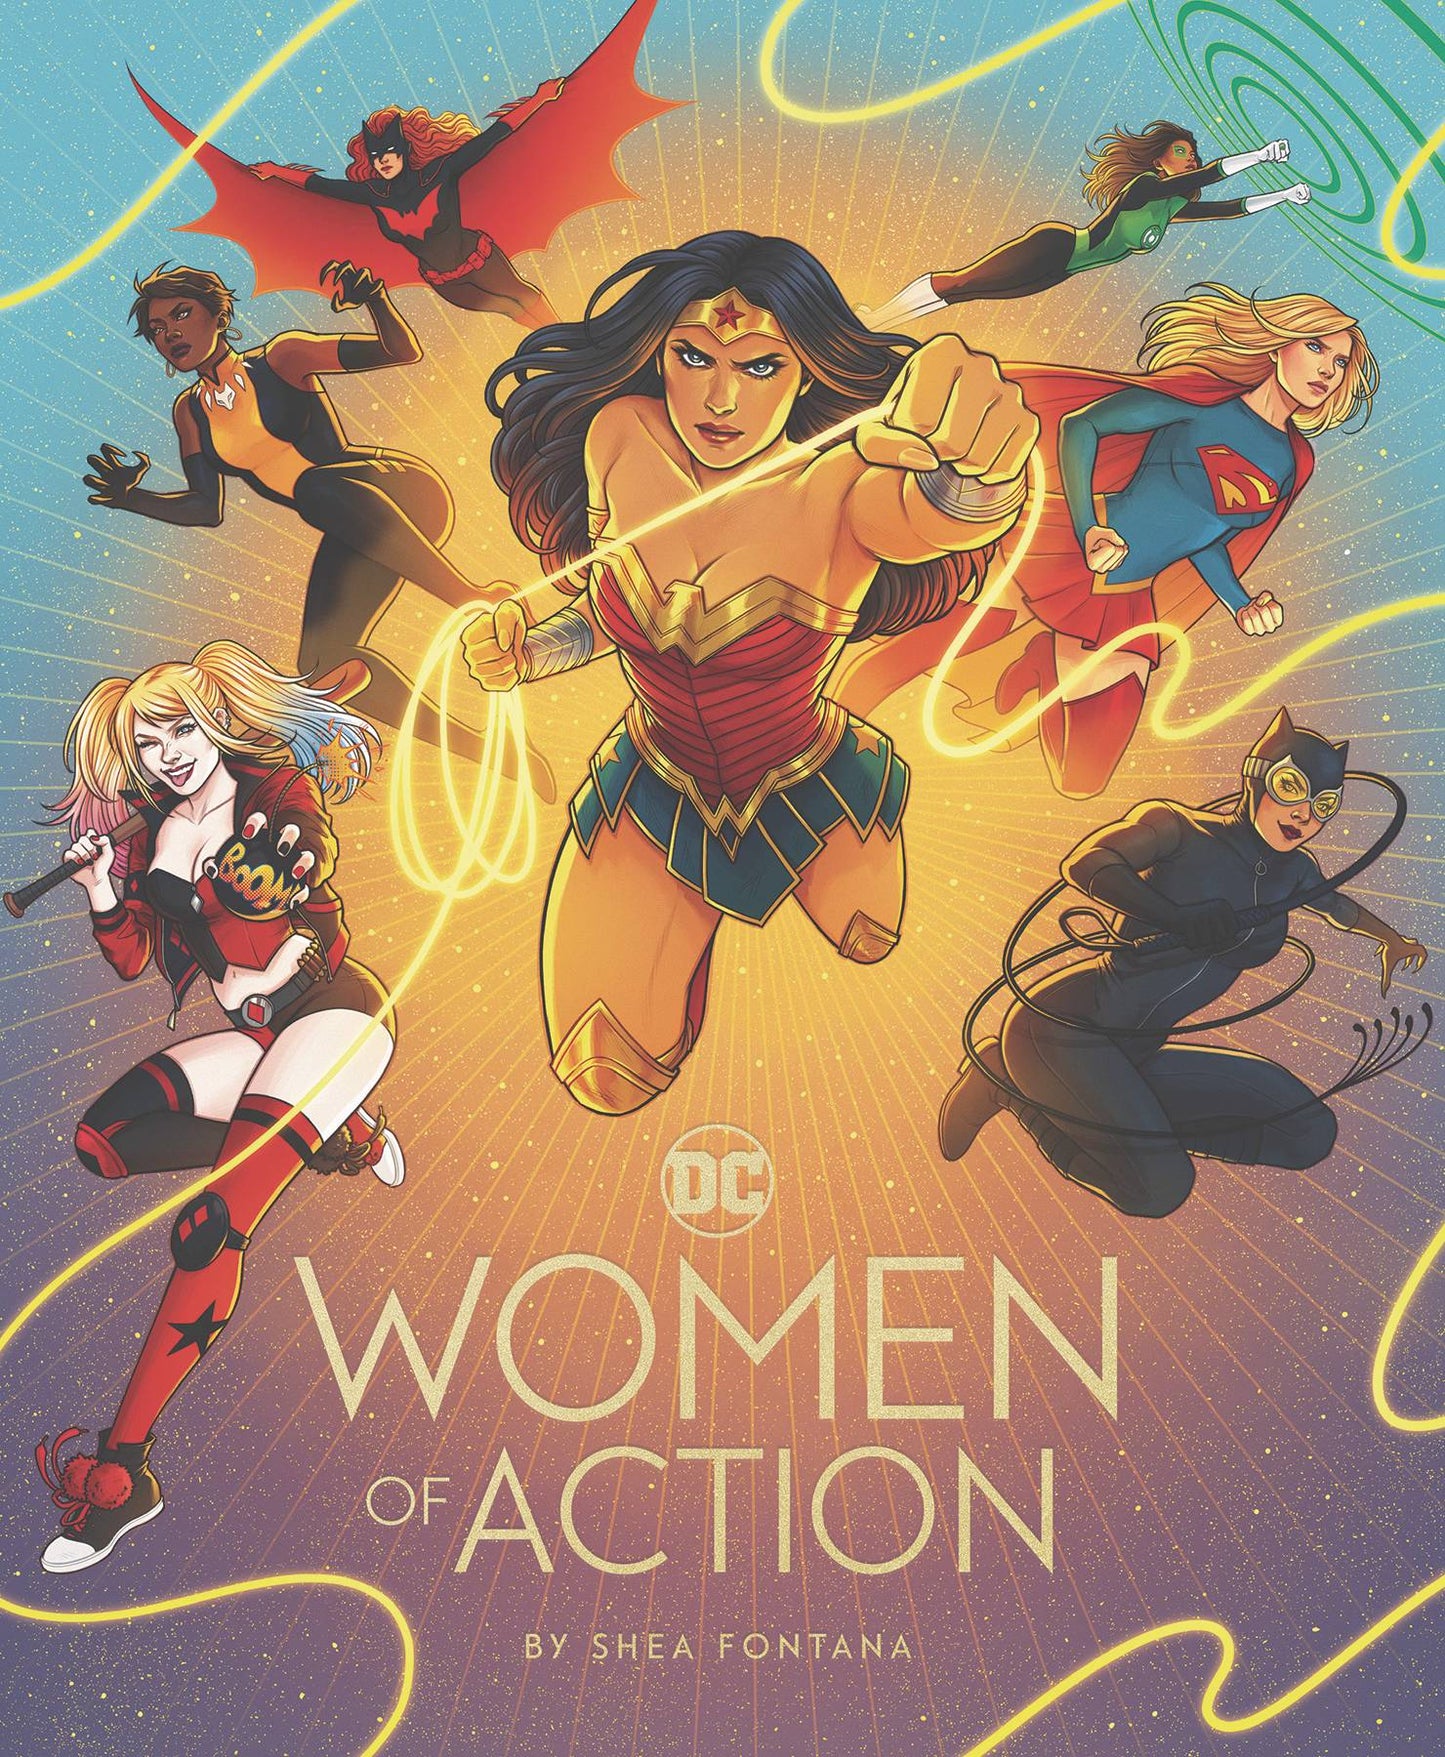 DC - Women of Action by Shea Fontana (HARDCOVER)